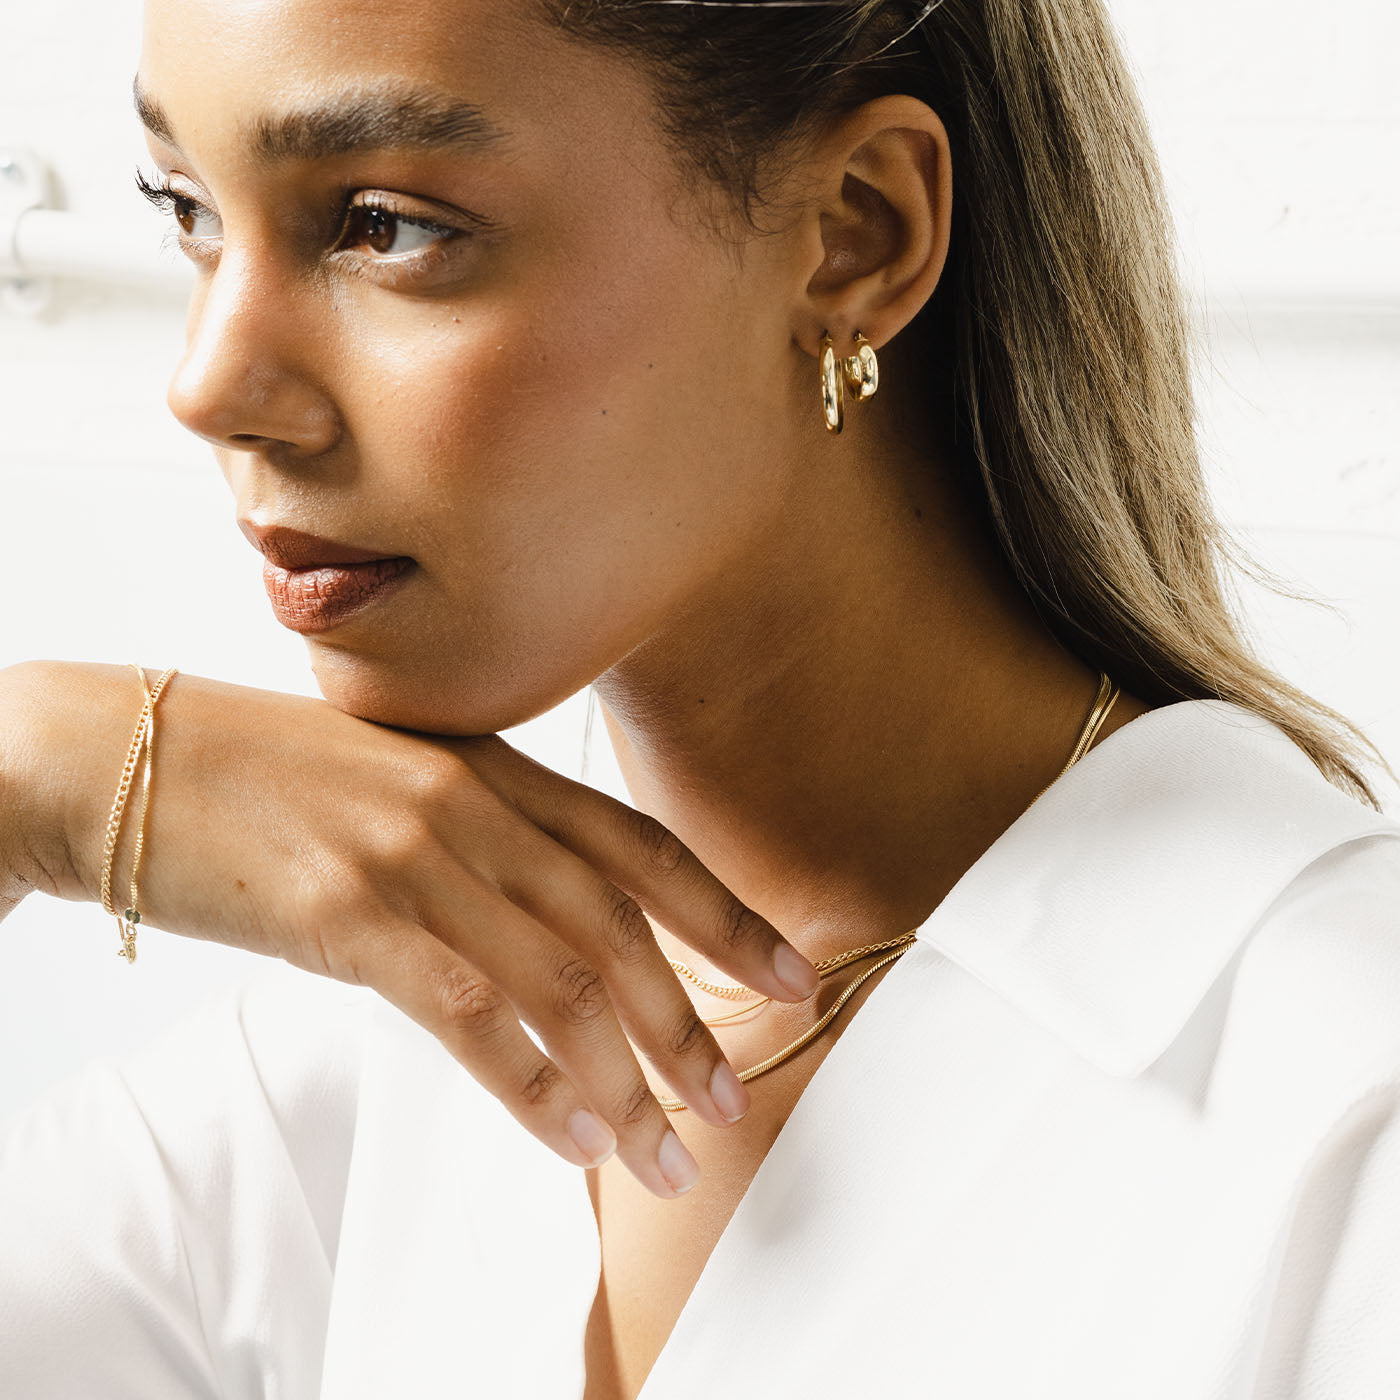 Buy GoldToned  Blue Earrings for Women by Crunchy Fashion Online   Ajiocom